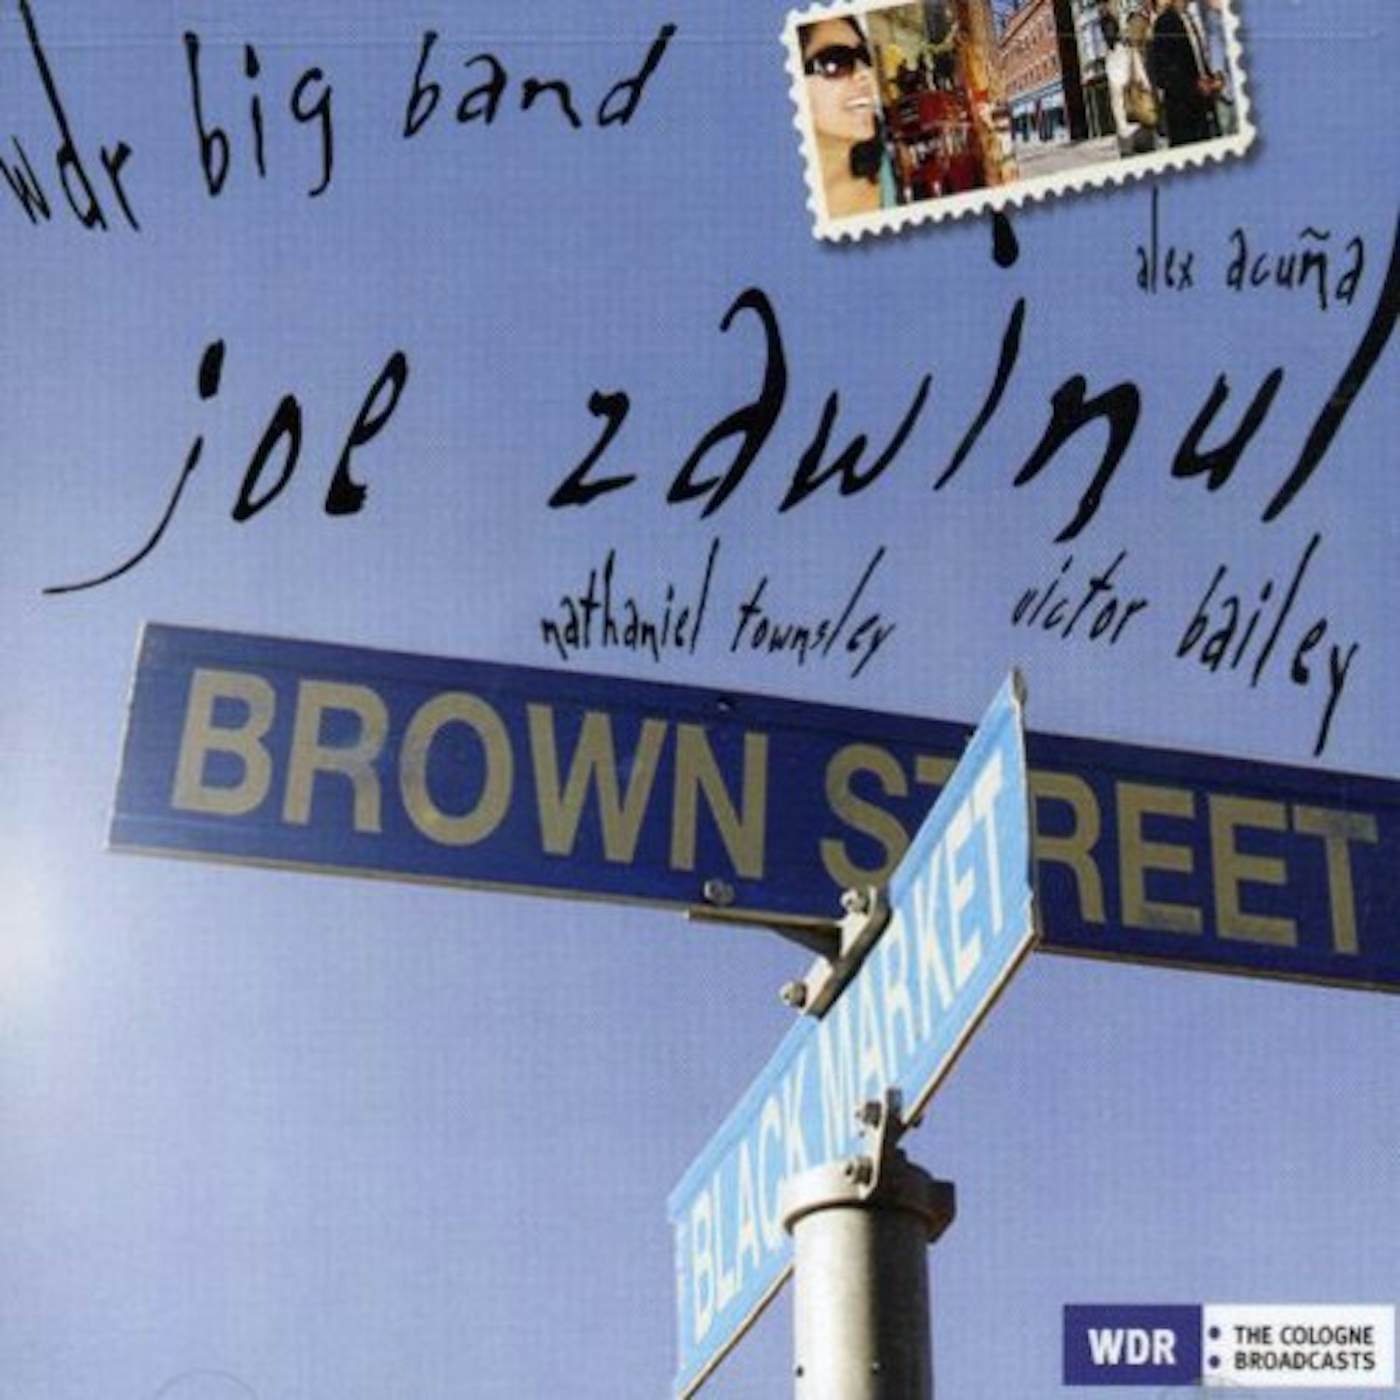 Joe Zawinul BROWN STREET CD